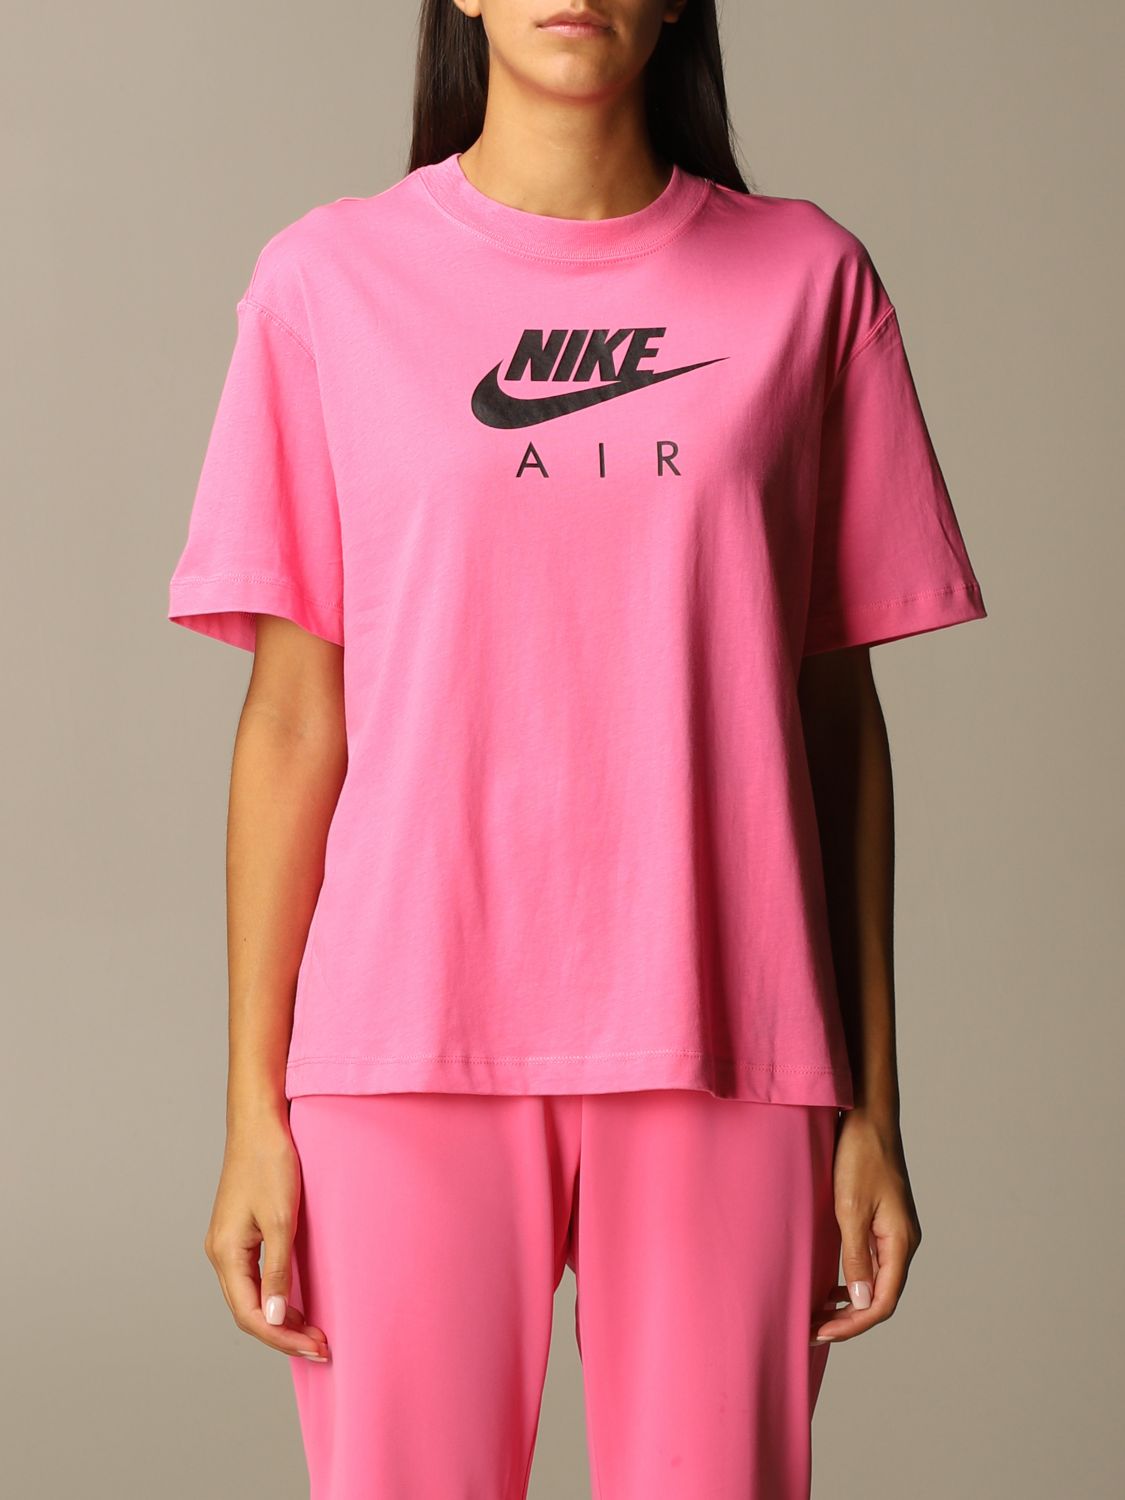 T-shirt Nike con logo | T-Shirt Nike Donna Rosa | T-Shirt Nike CU5558  Giglio IT